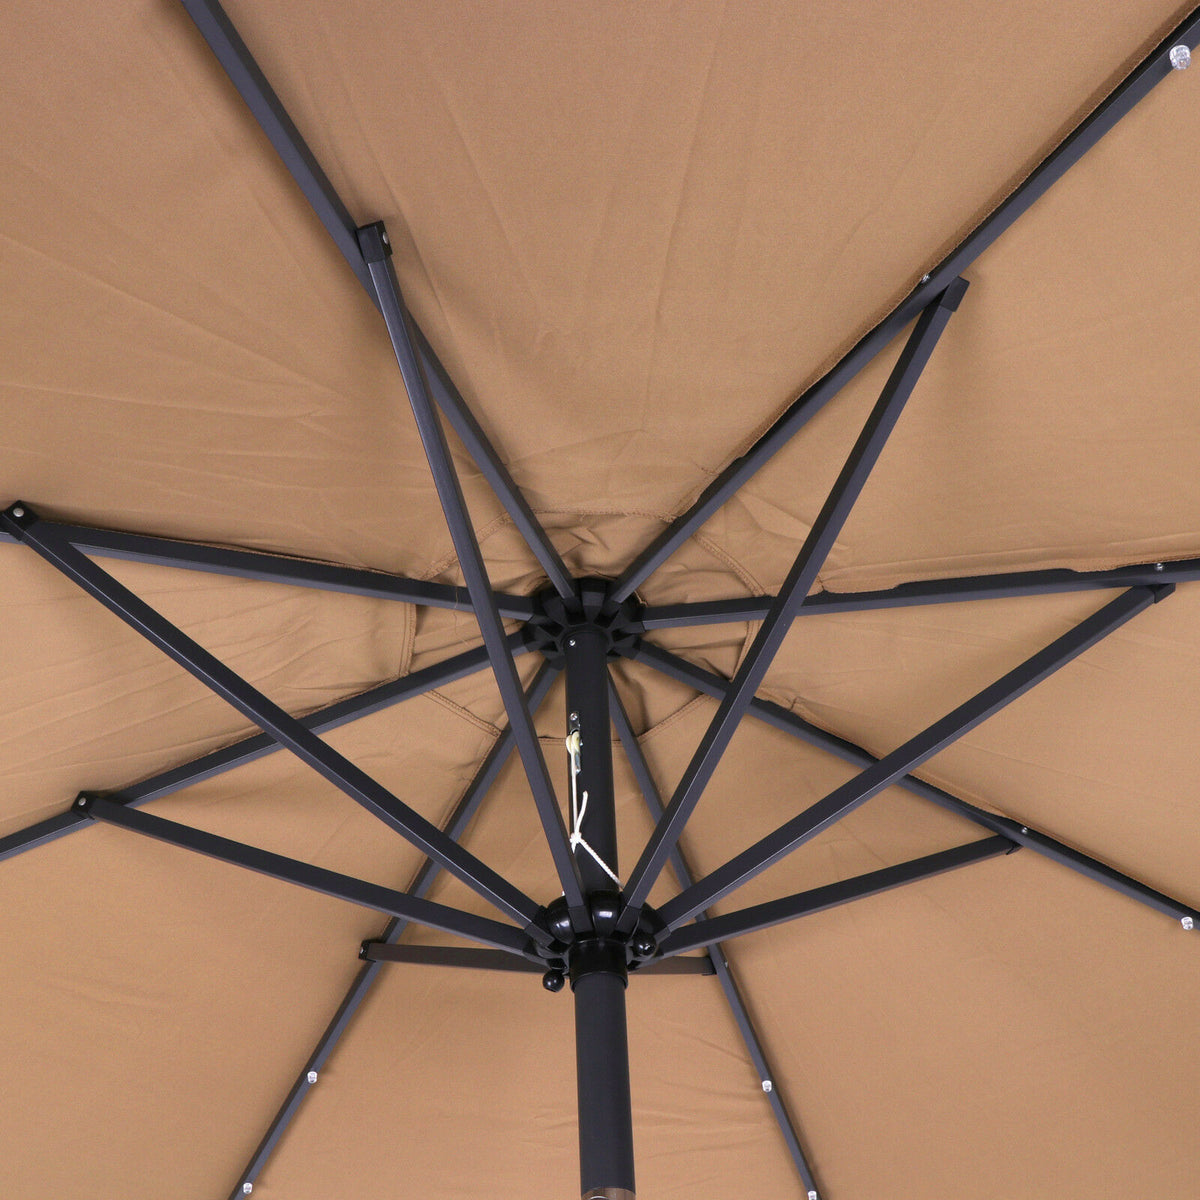 10FT Deluxe Solar 24 LED Lights Patio Umbrella W/ Tilt Adjustment - Tan